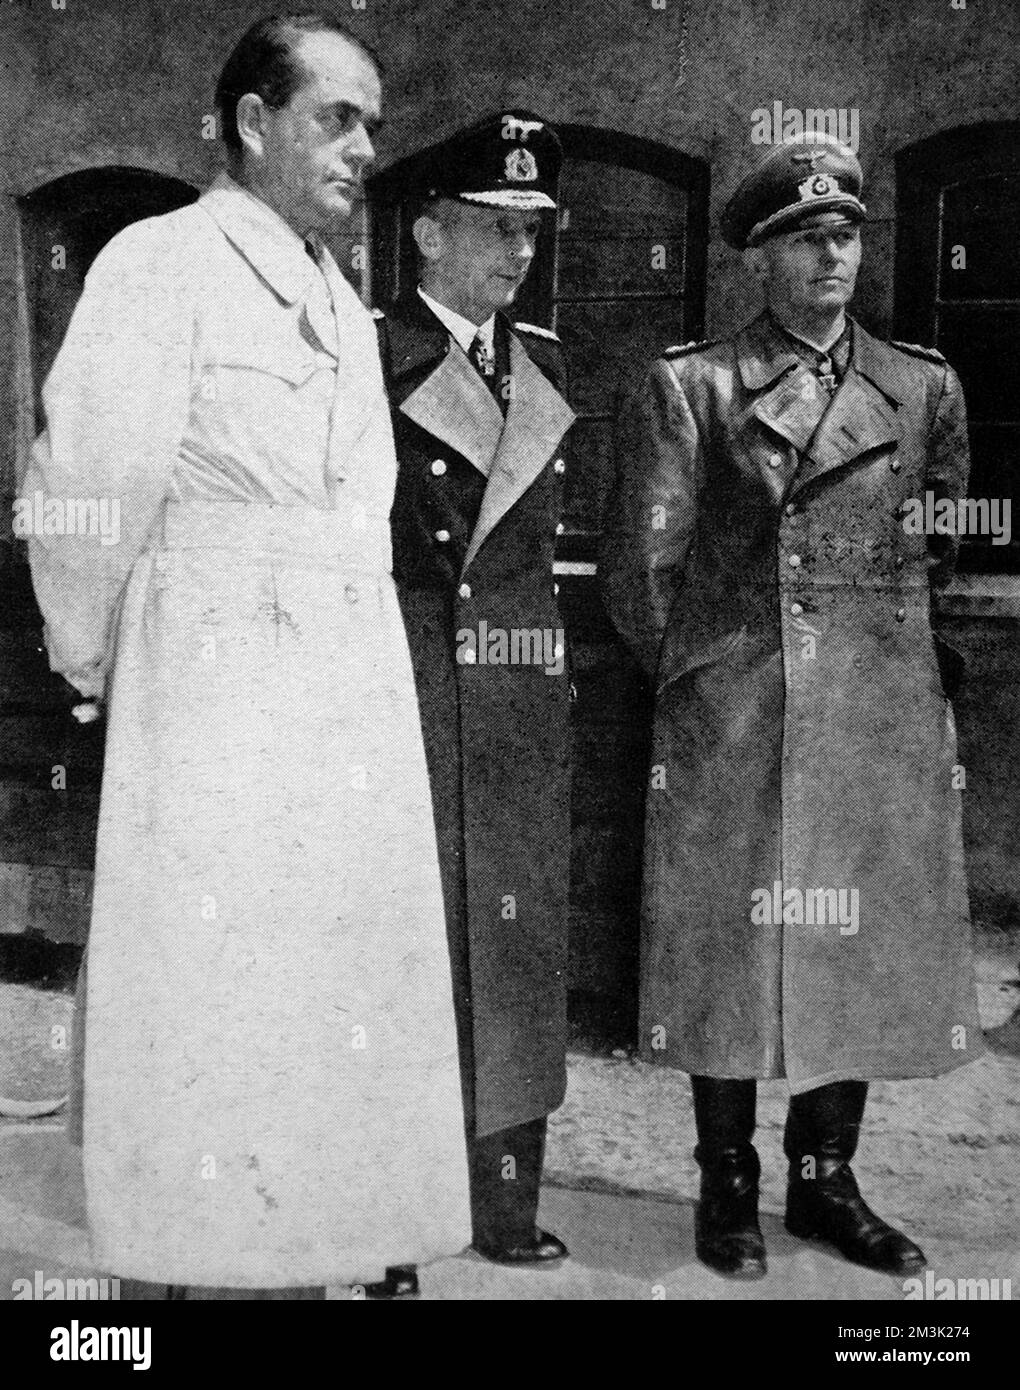 Foto von Dr. Albert Speer (1905-1981), Großadmiral Karl Doenitz (1891-1980) und Oberst Alfred Jodl (1890-1946) am Ende des Zweiten Weltkriegs in Europa, Mai 1945. Datum: 1945 Stockfoto